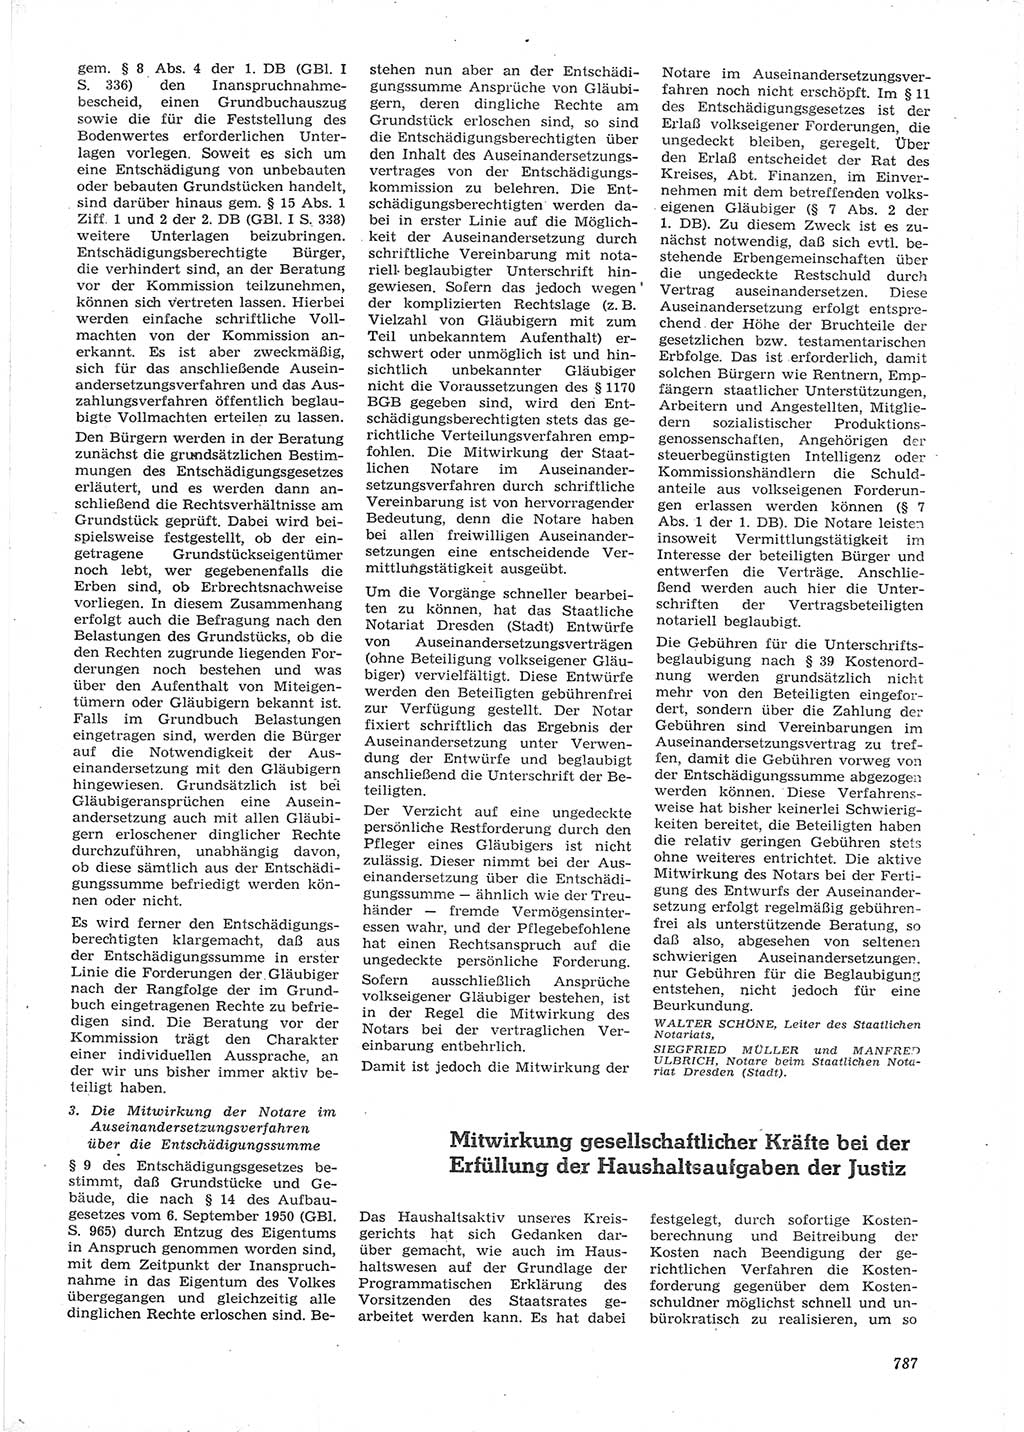 Neue Justiz (NJ), Zeitschrift für Recht und Rechtswissenschaft [Deutsche Demokratische Republik (DDR)], 15. Jahrgang 1961, Seite 787 (NJ DDR 1961, S. 787)